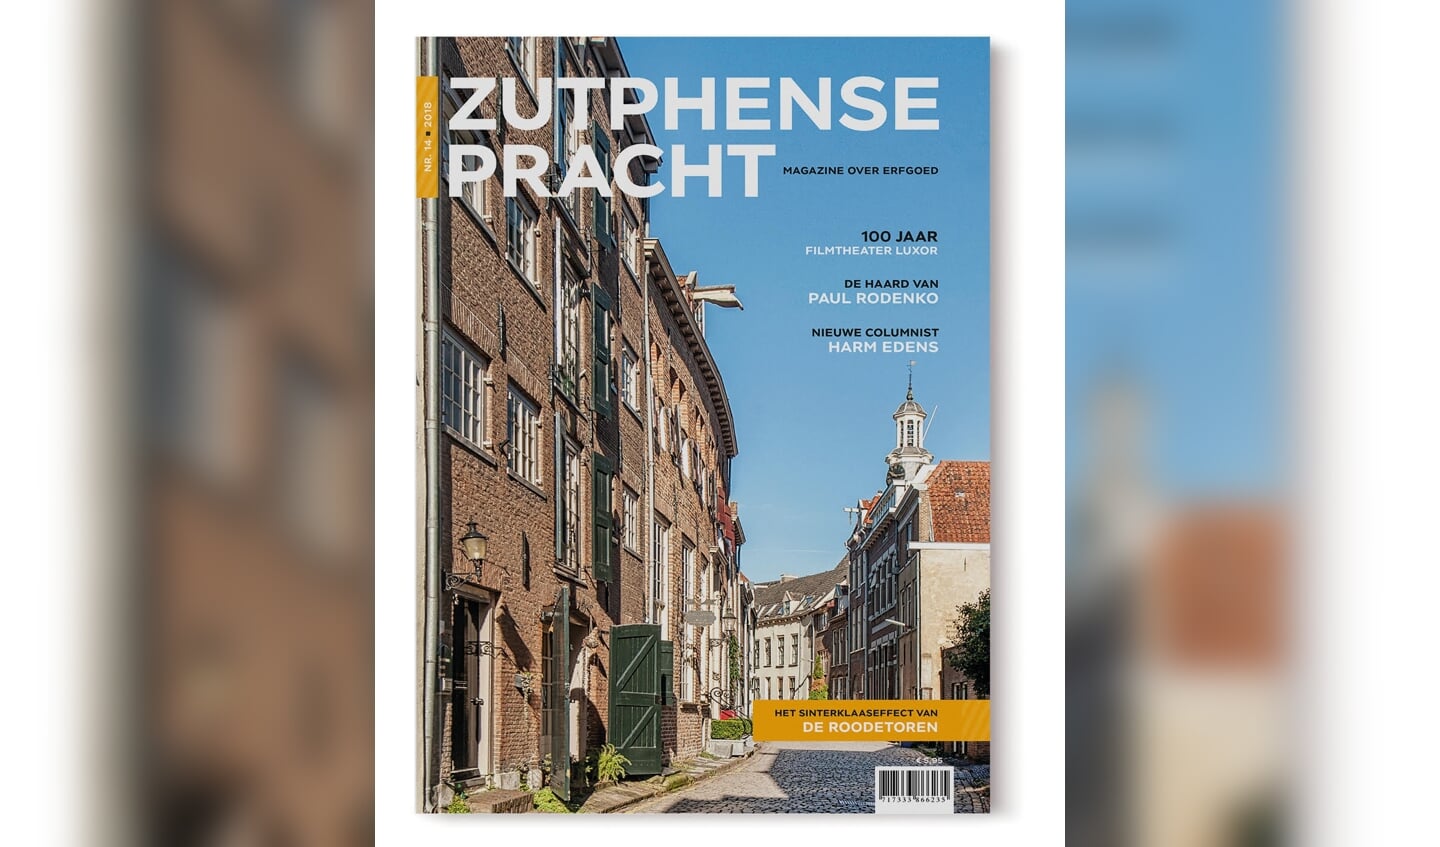 De Cover van de Zutphense Pracht. Foto: PR